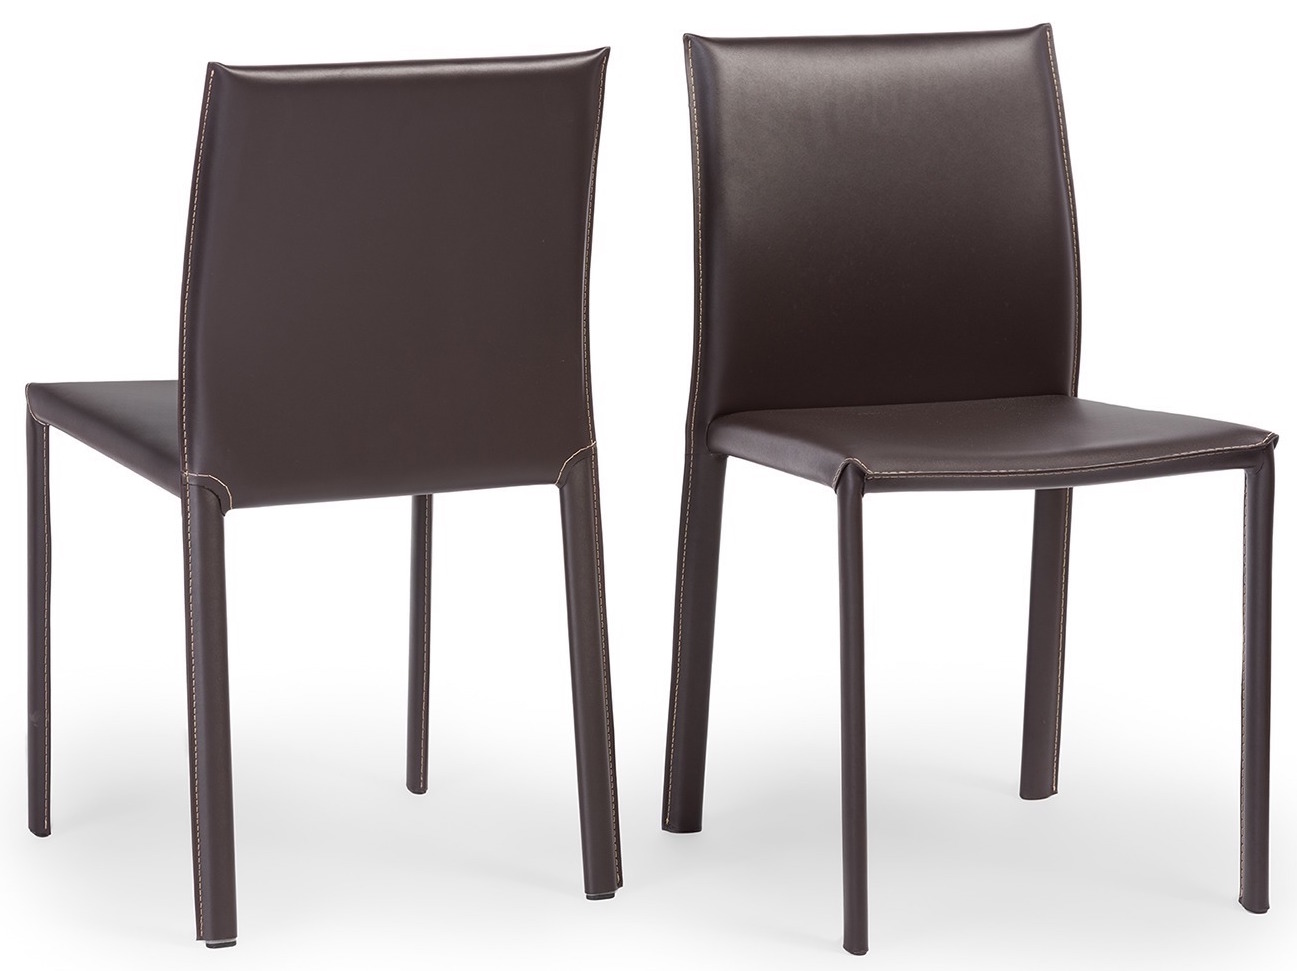 burridge-chair-in-brown-color.jpg